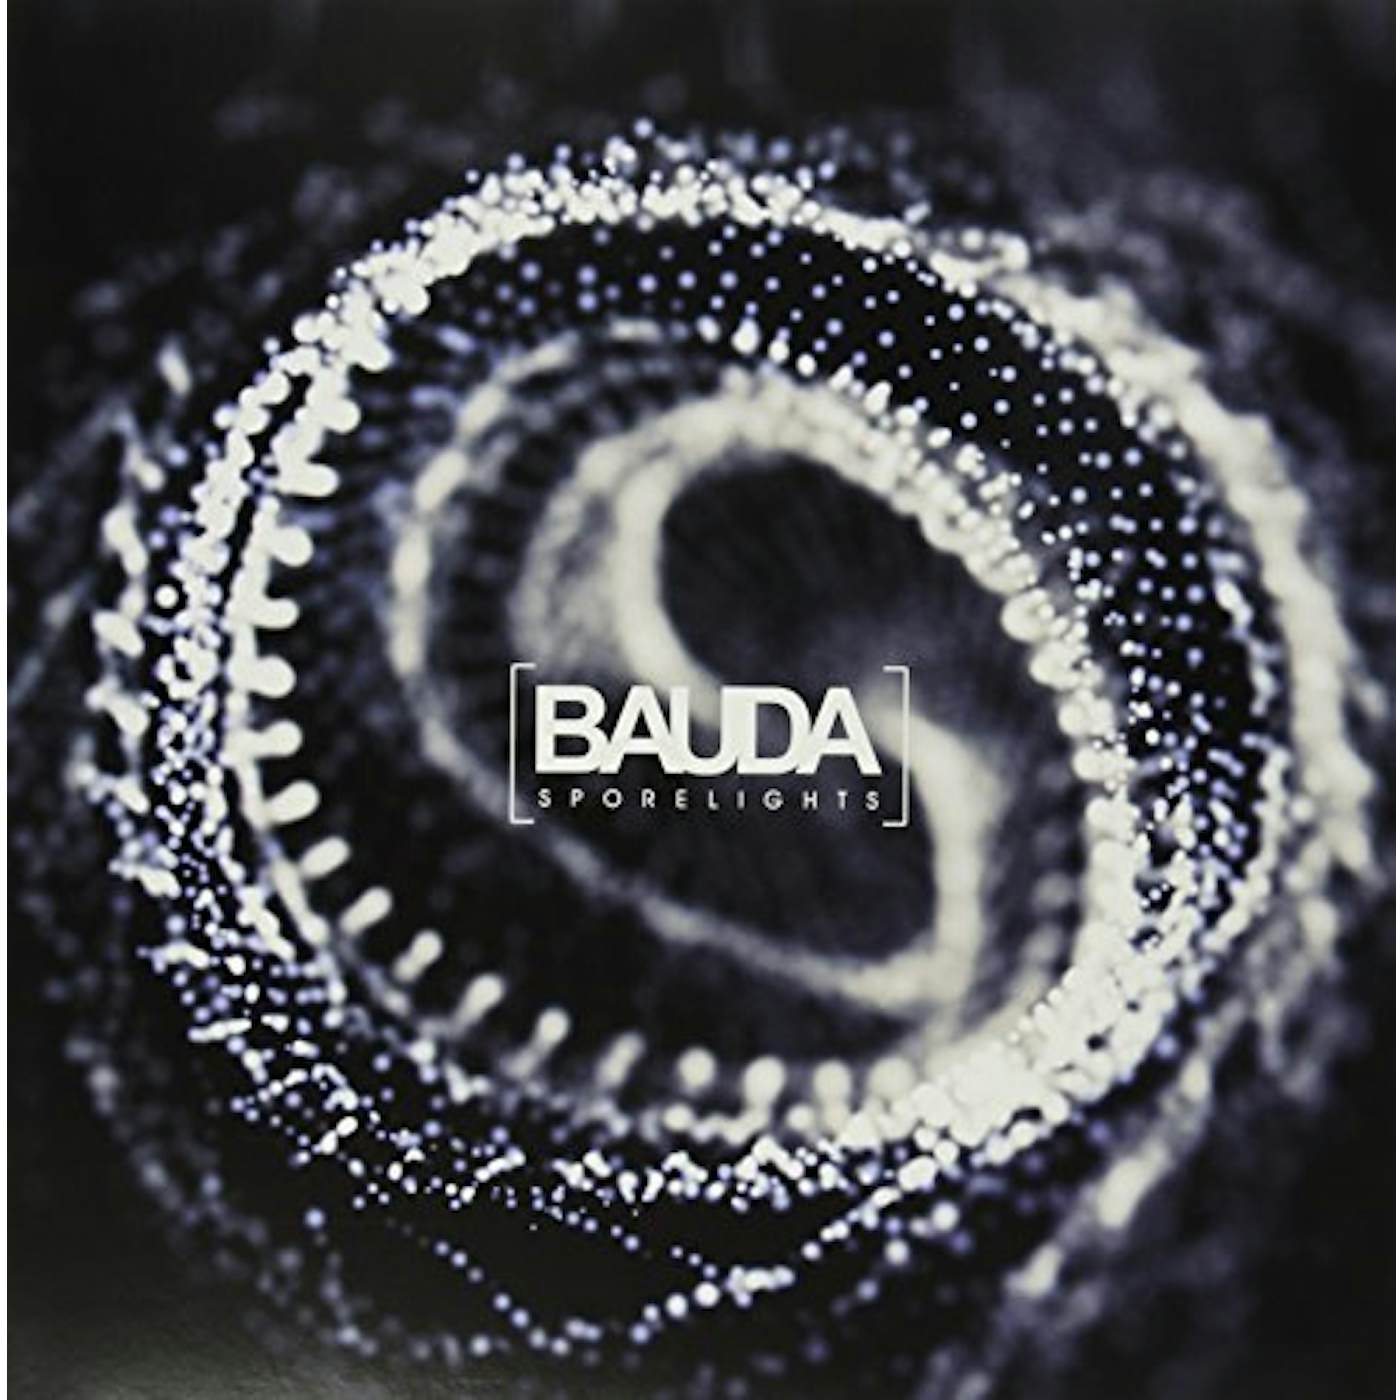 Bauda Sporelights Vinyl Record